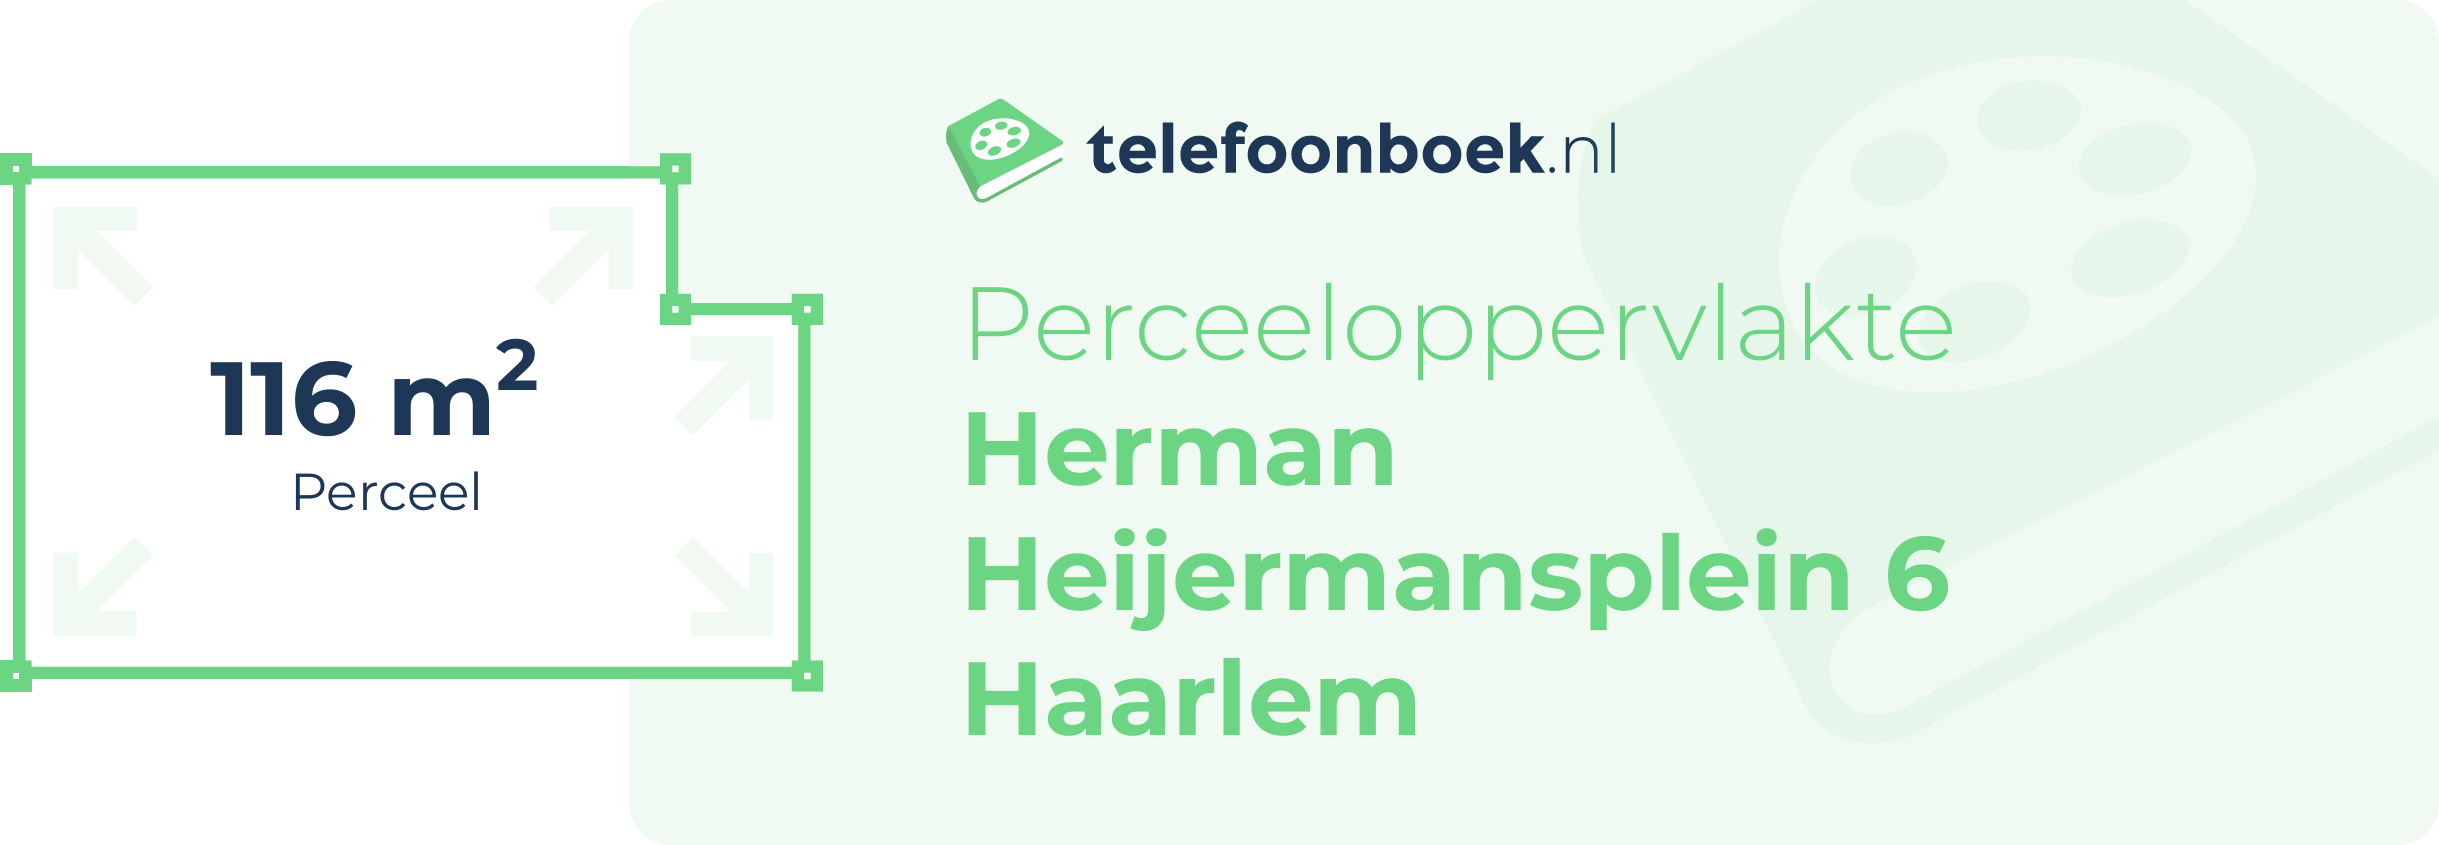 Perceeloppervlakte Herman Heijermansplein 6 Haarlem